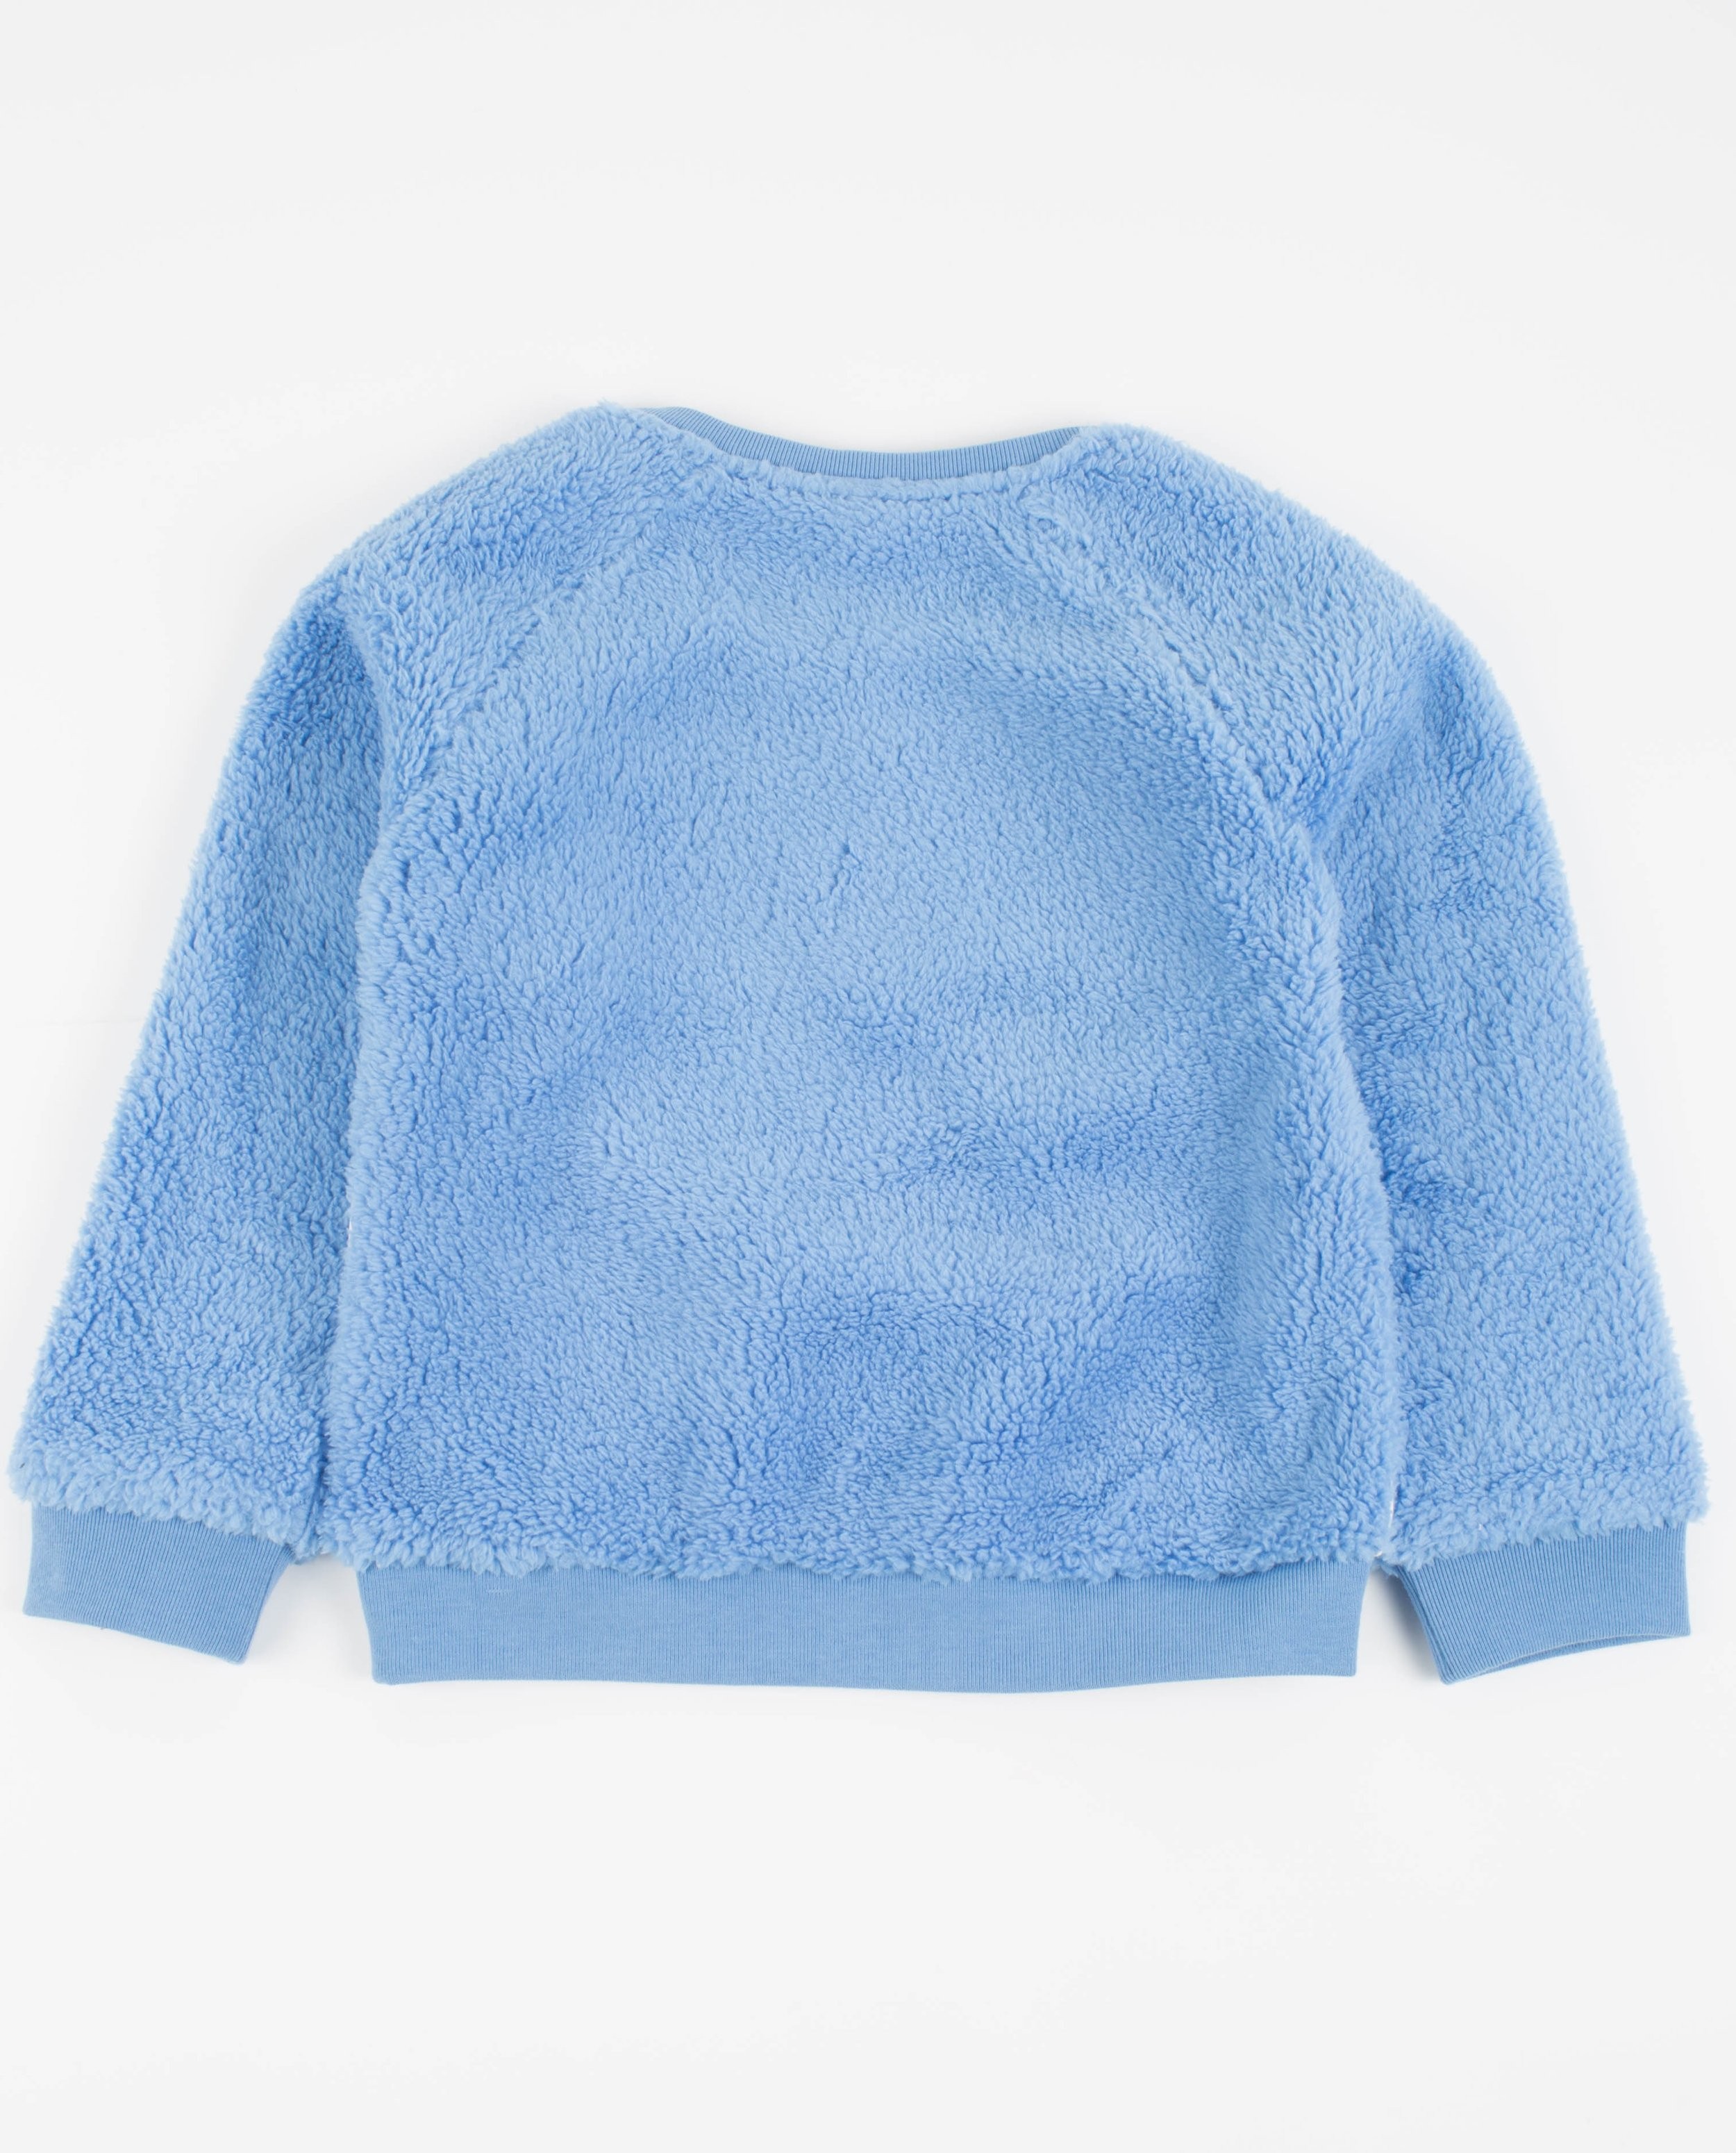 Sweats - Blauwe sweater met imitatiepels